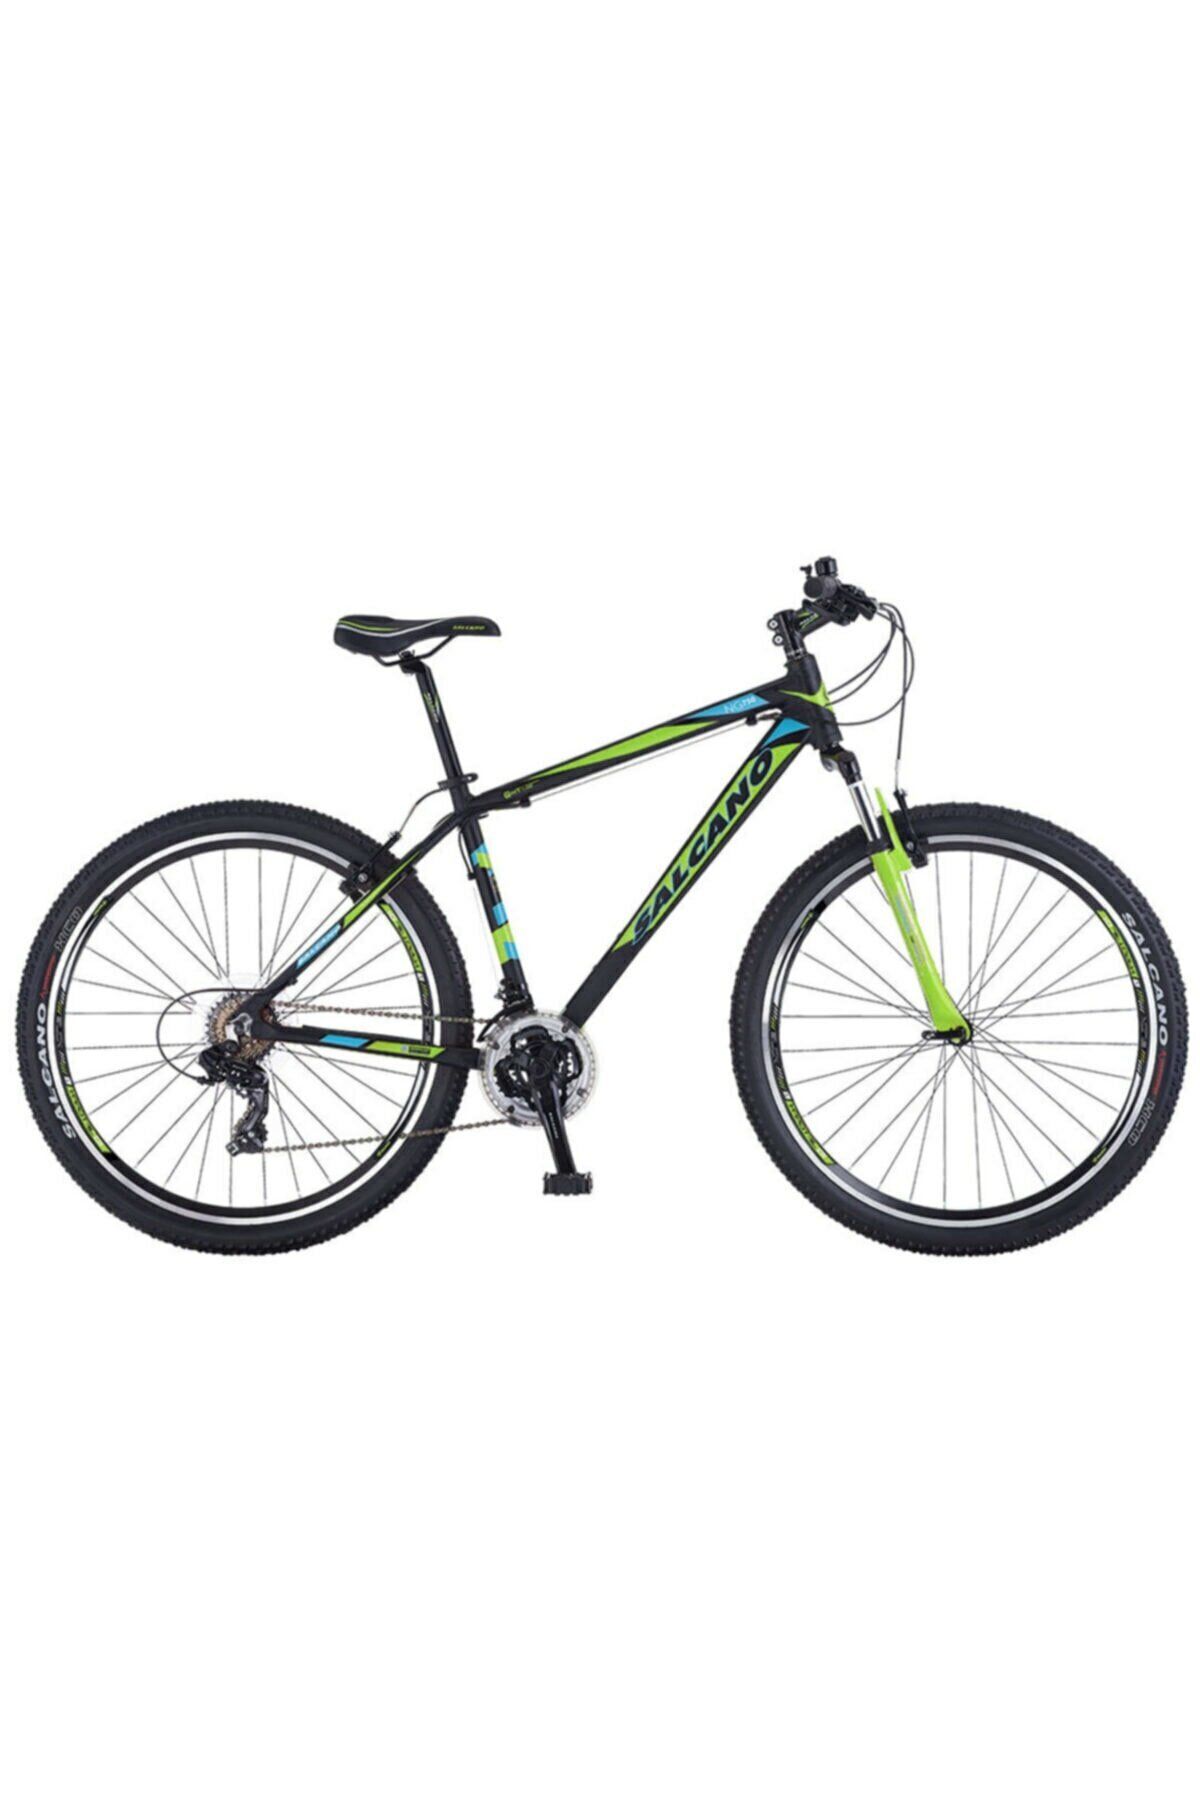 Salcano NG 750 24 V fren 21 vites Çocuk Dağ Bisikleti siyah yeşil turkuaz